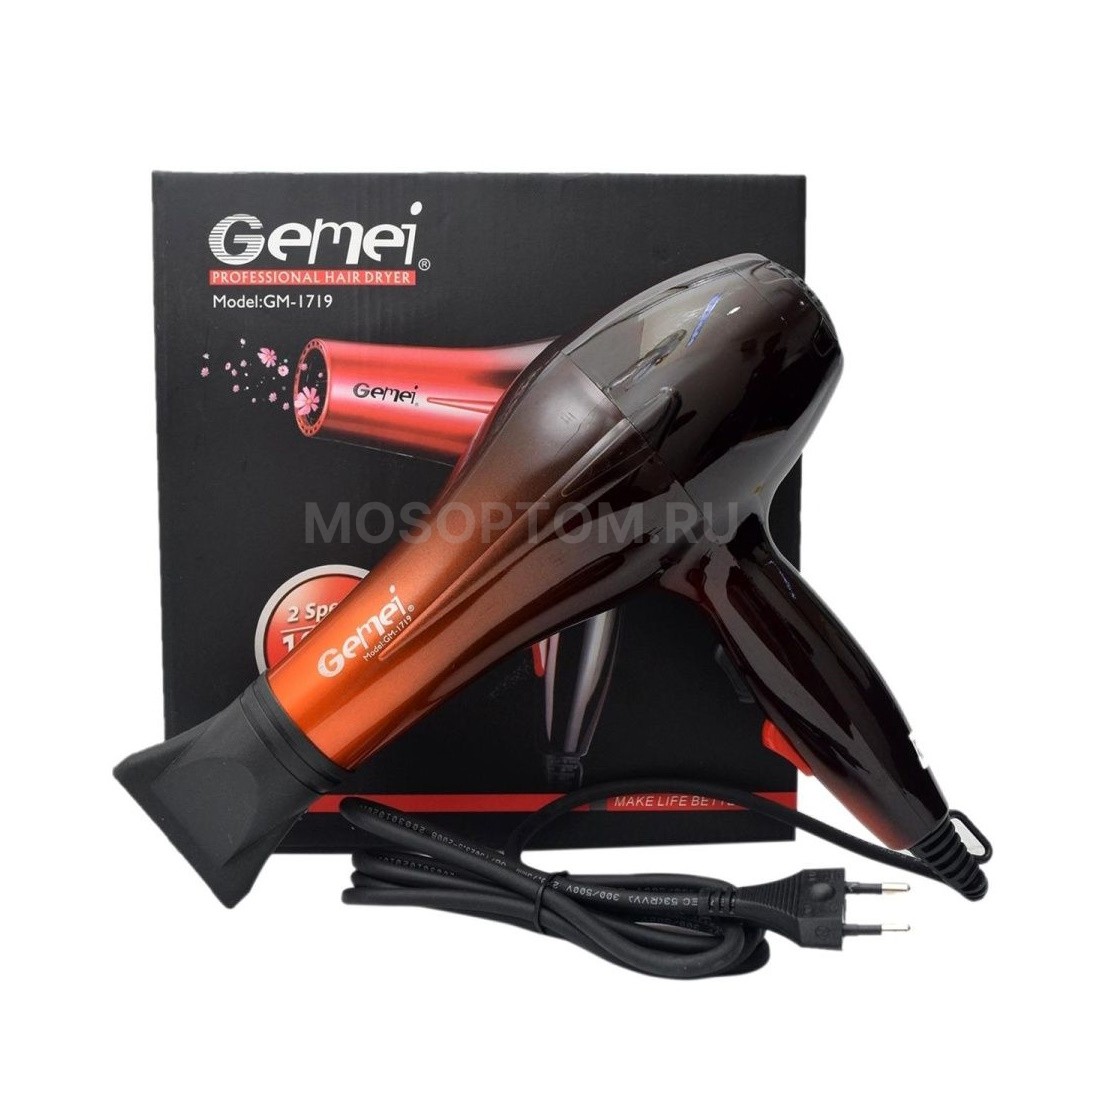 Профессиональный фен для волос Gemei GM-1719 оптом